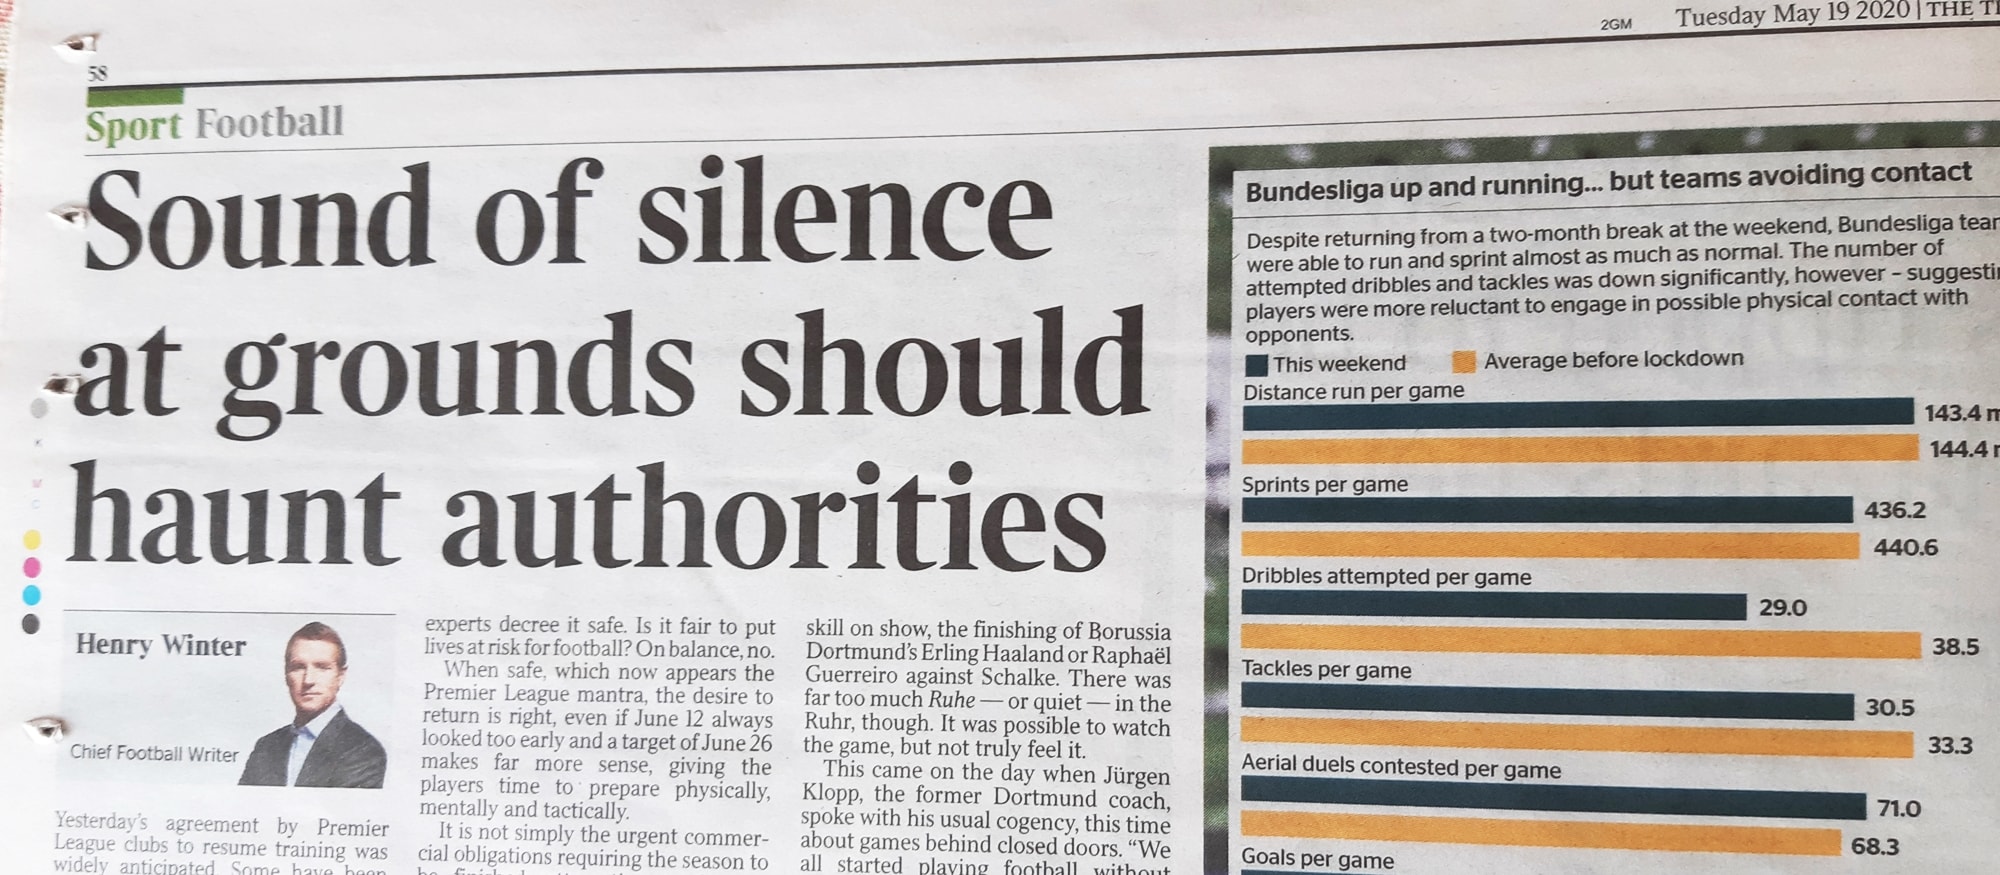 ภาพจากหนังสือพิมพ์ The Times Sound of Silence at grounds should haunt authorities